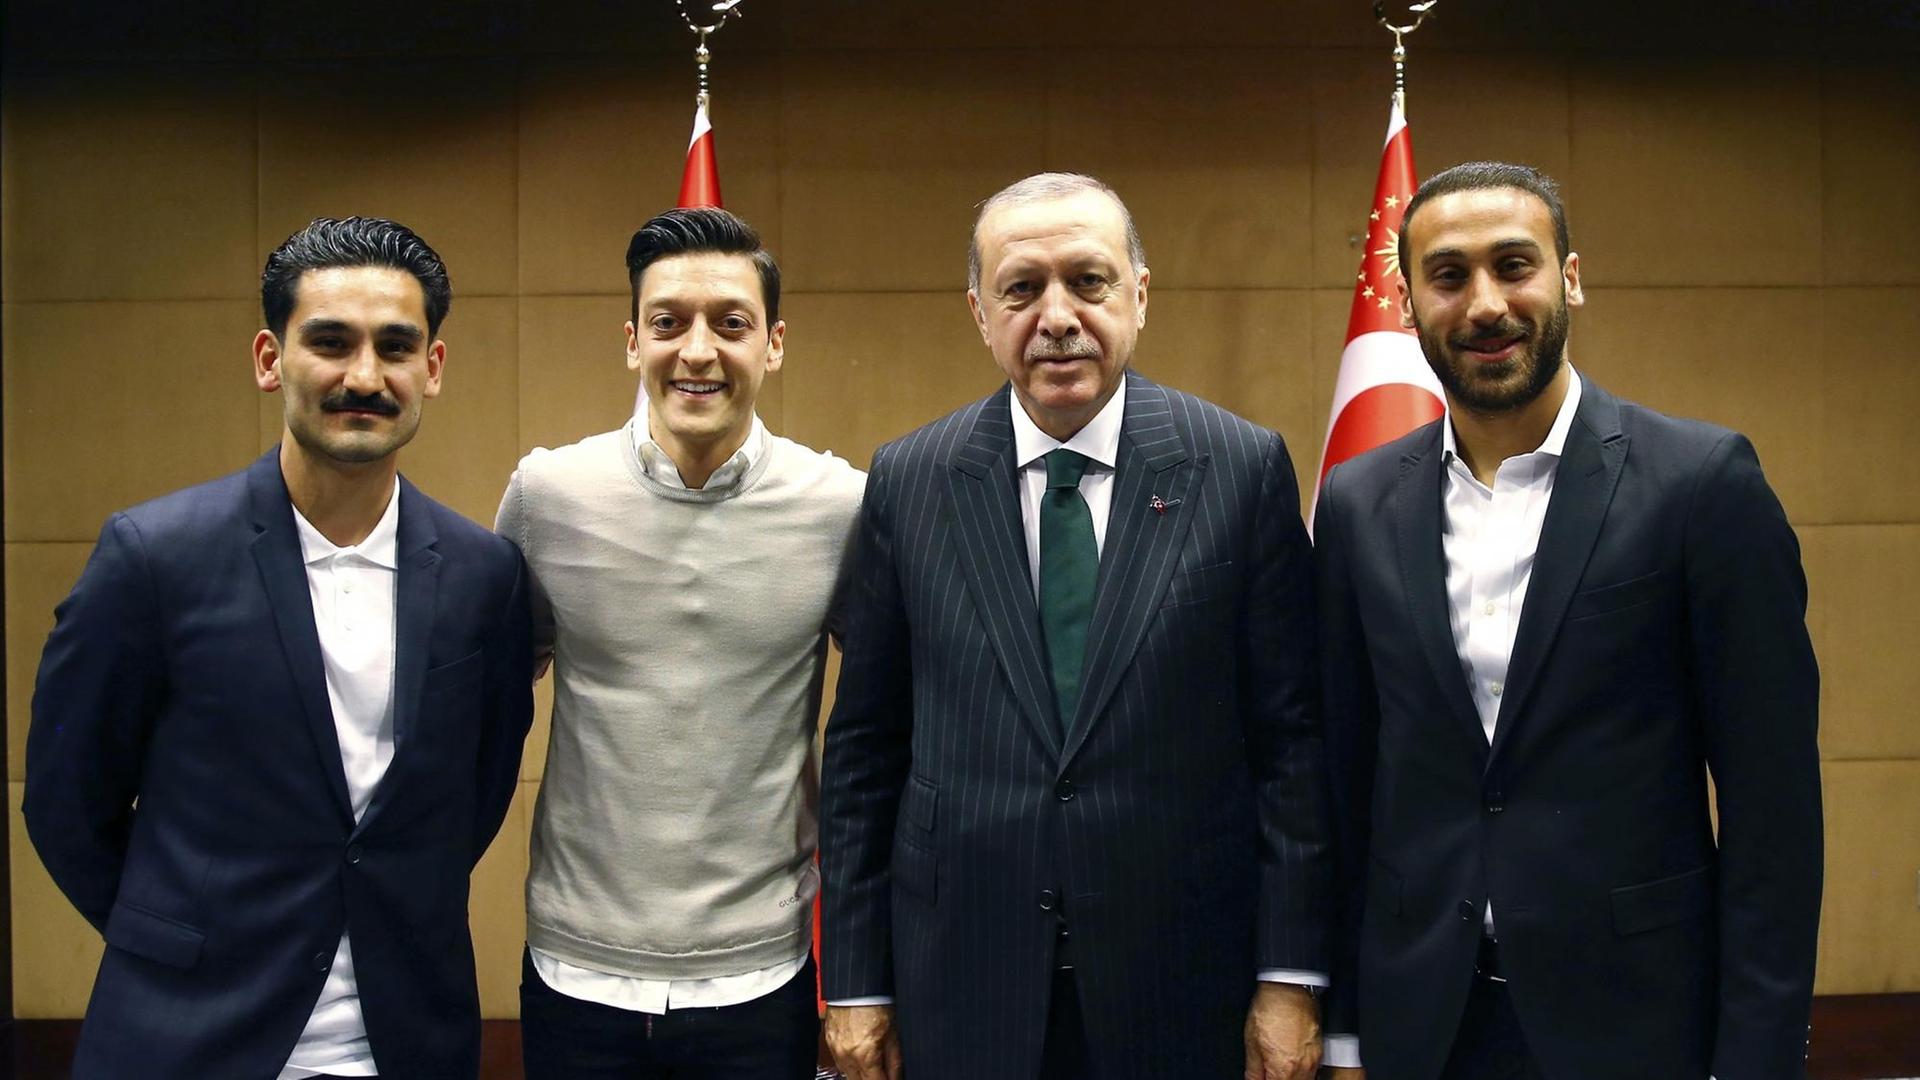 Recep Tayyip Erdogan (2.v.r.), Staatspräsident der Türkei, steht zusammen mit den Premier League Fußballspielern Ilkay Gündogan (l), Mesut Özil (2.v.l.) und Cenk Tosun (r).